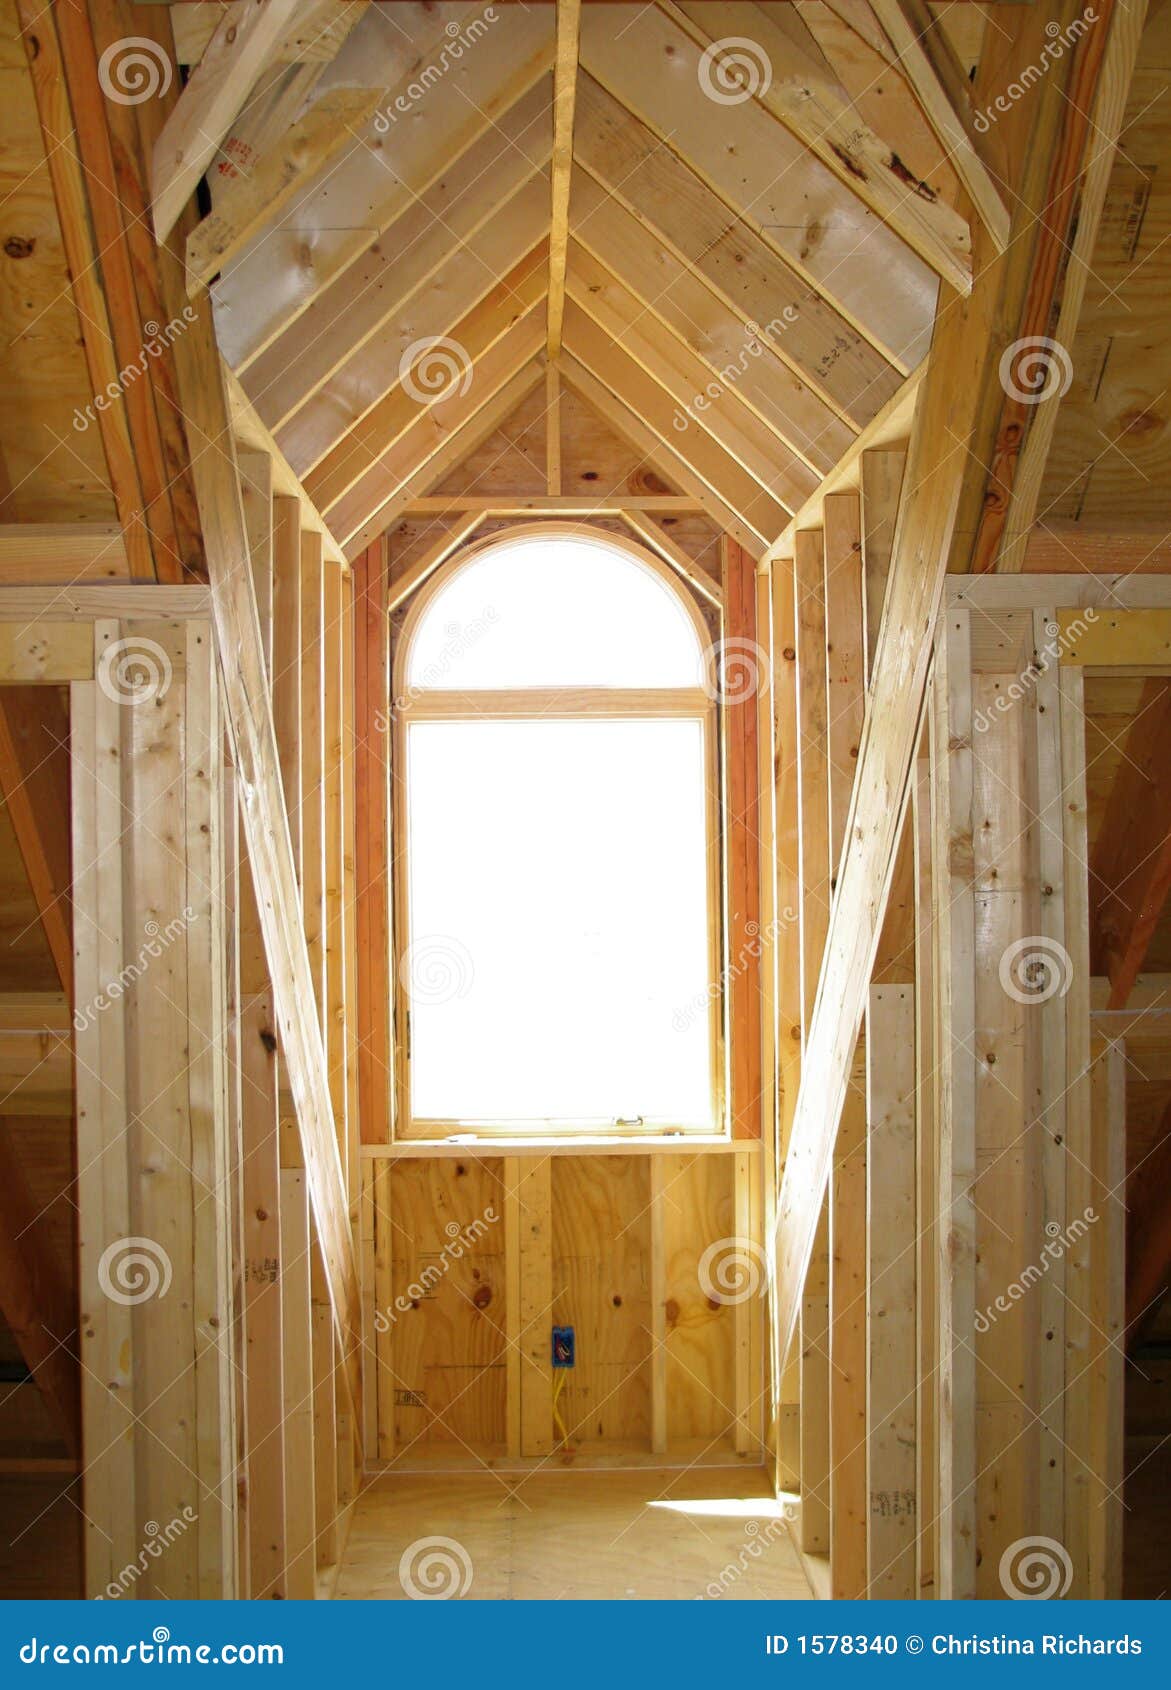 Wood Framing For Dormer Stock Photo - Image: 1578340